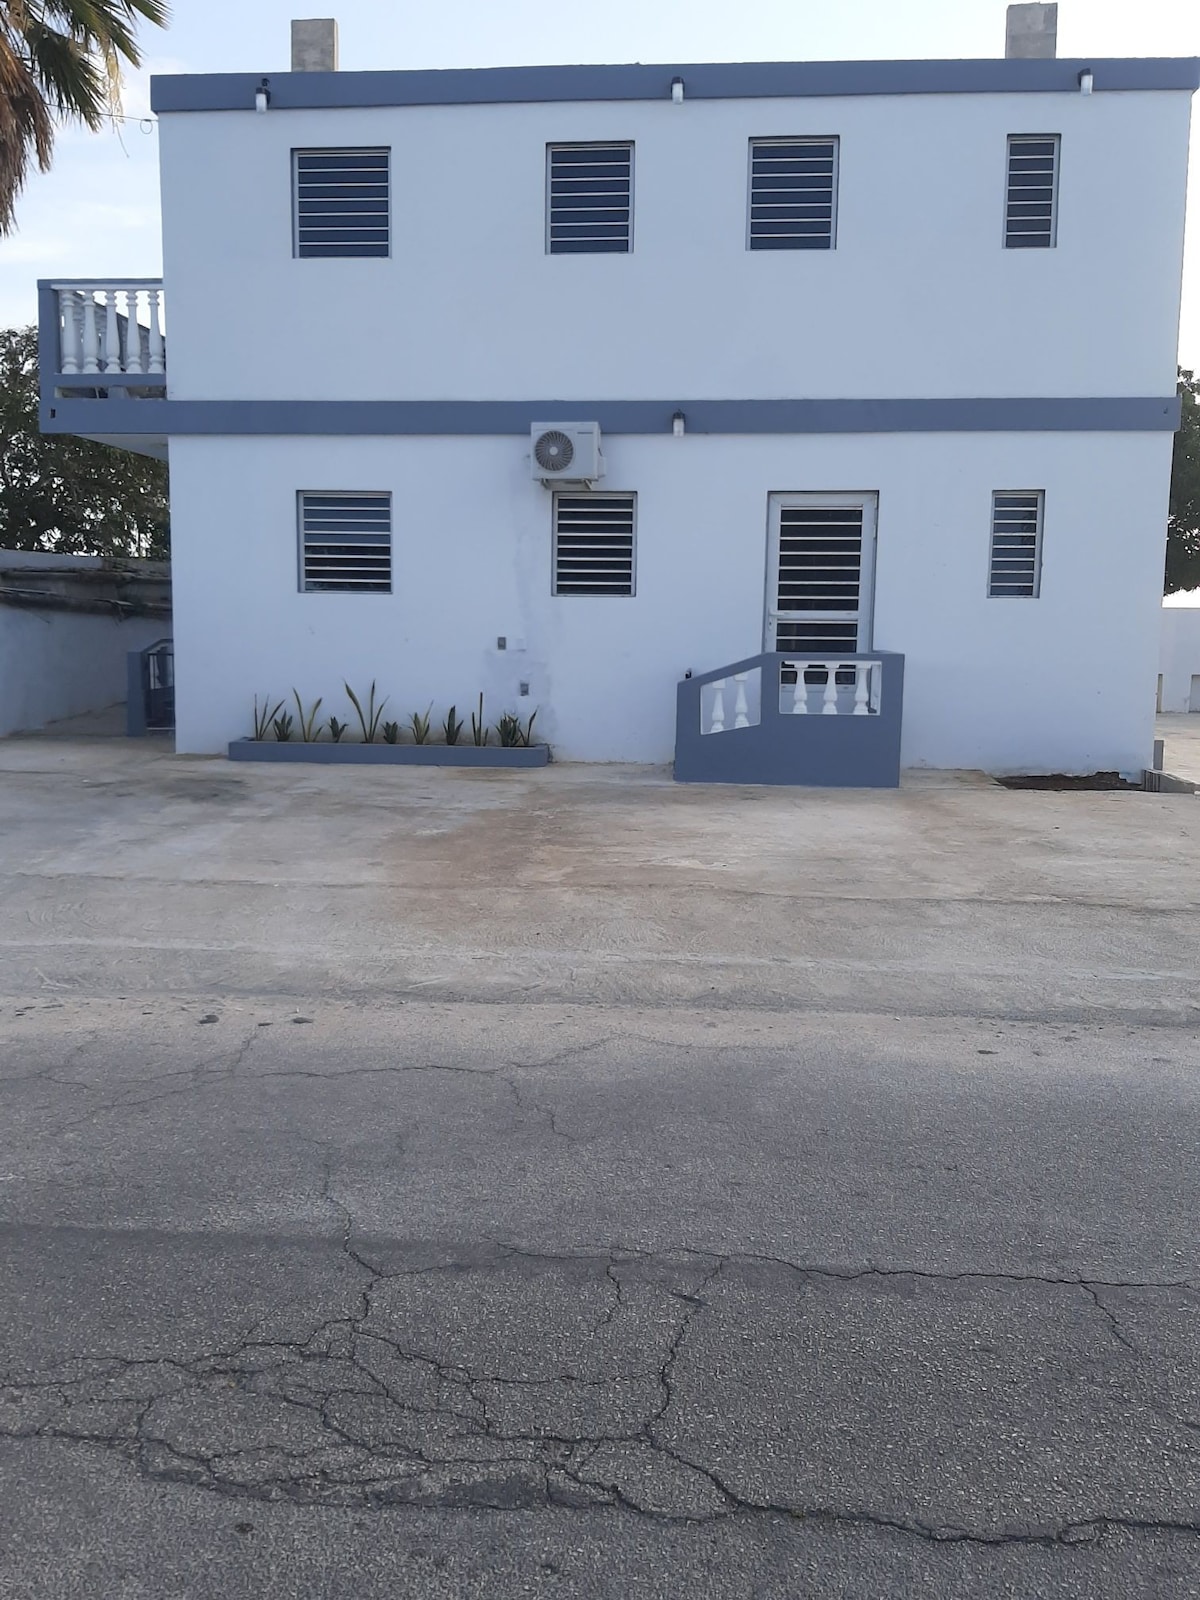 库拉索（ Curacao ） # 4 A家庭单间公寓（ 26平方米）